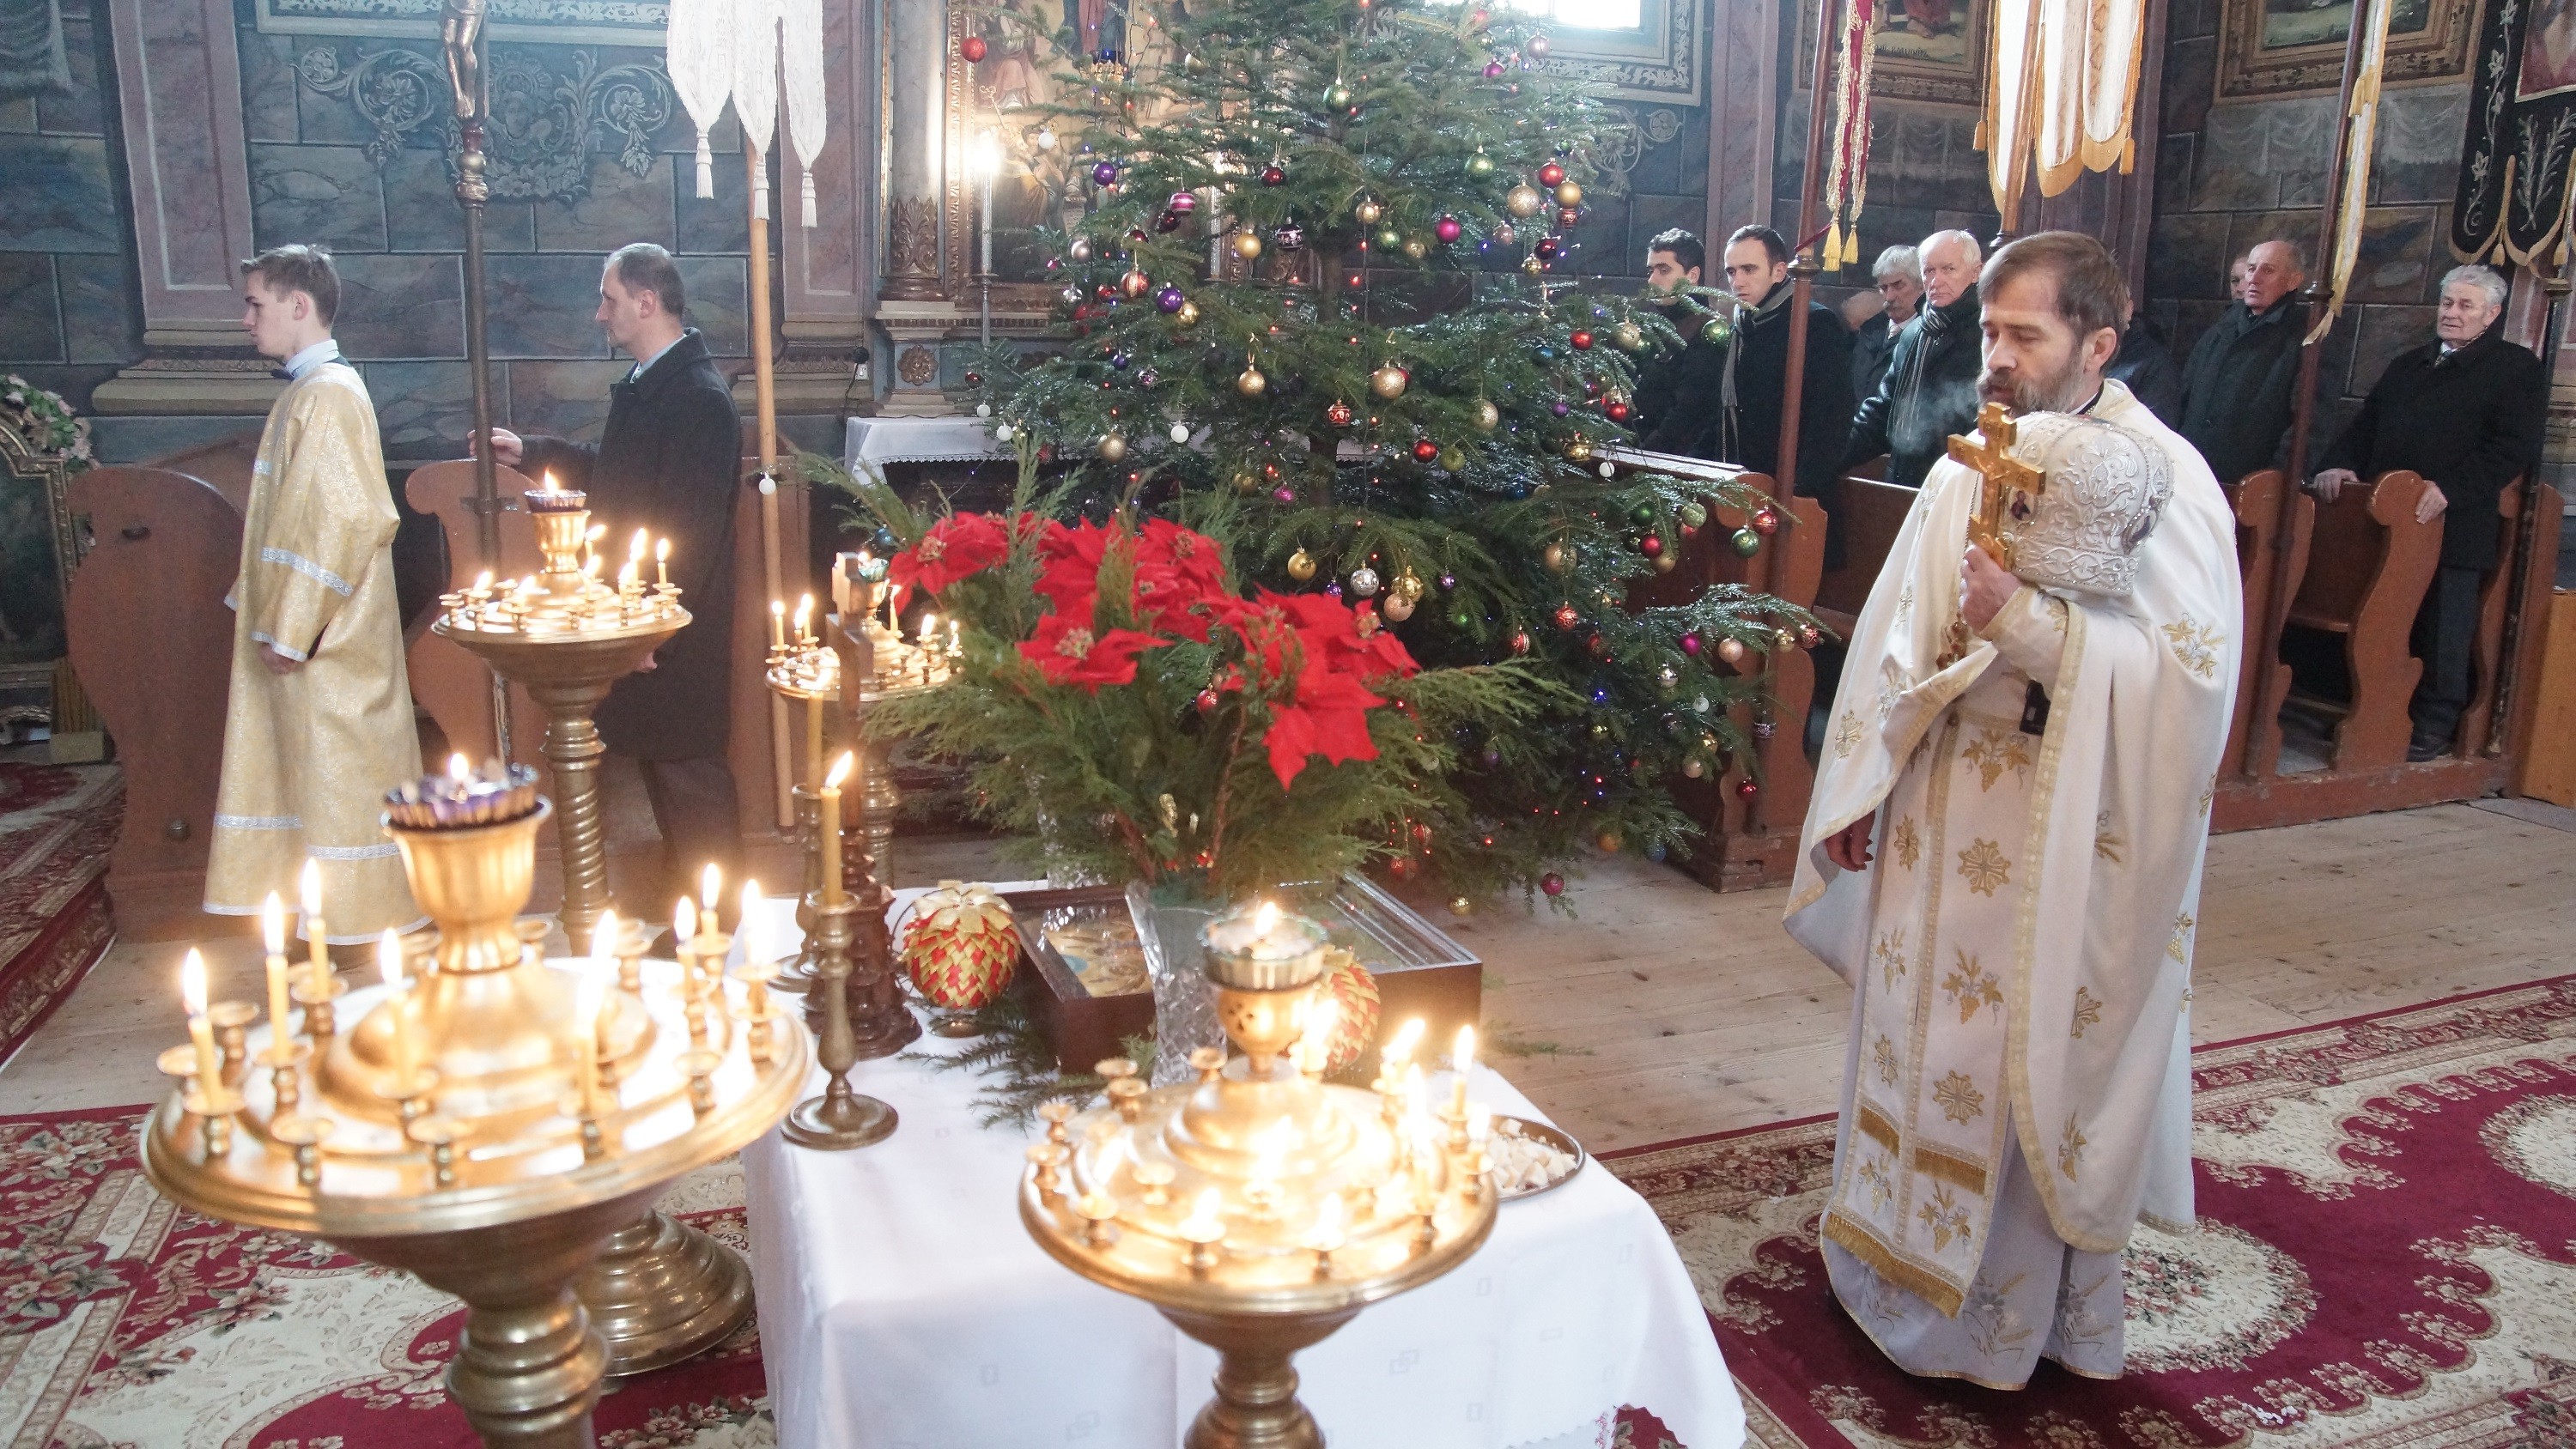 Wnętrze cerkwi. Przed niewielkim stolikiem z ikoną Bożego Narodzenia stoi ksiądz. W dłoni trzyma krzyż oraz mitrę - nakrycie głowy. W tle ławy z wiernymi i bożonarodzeniowa choinka.